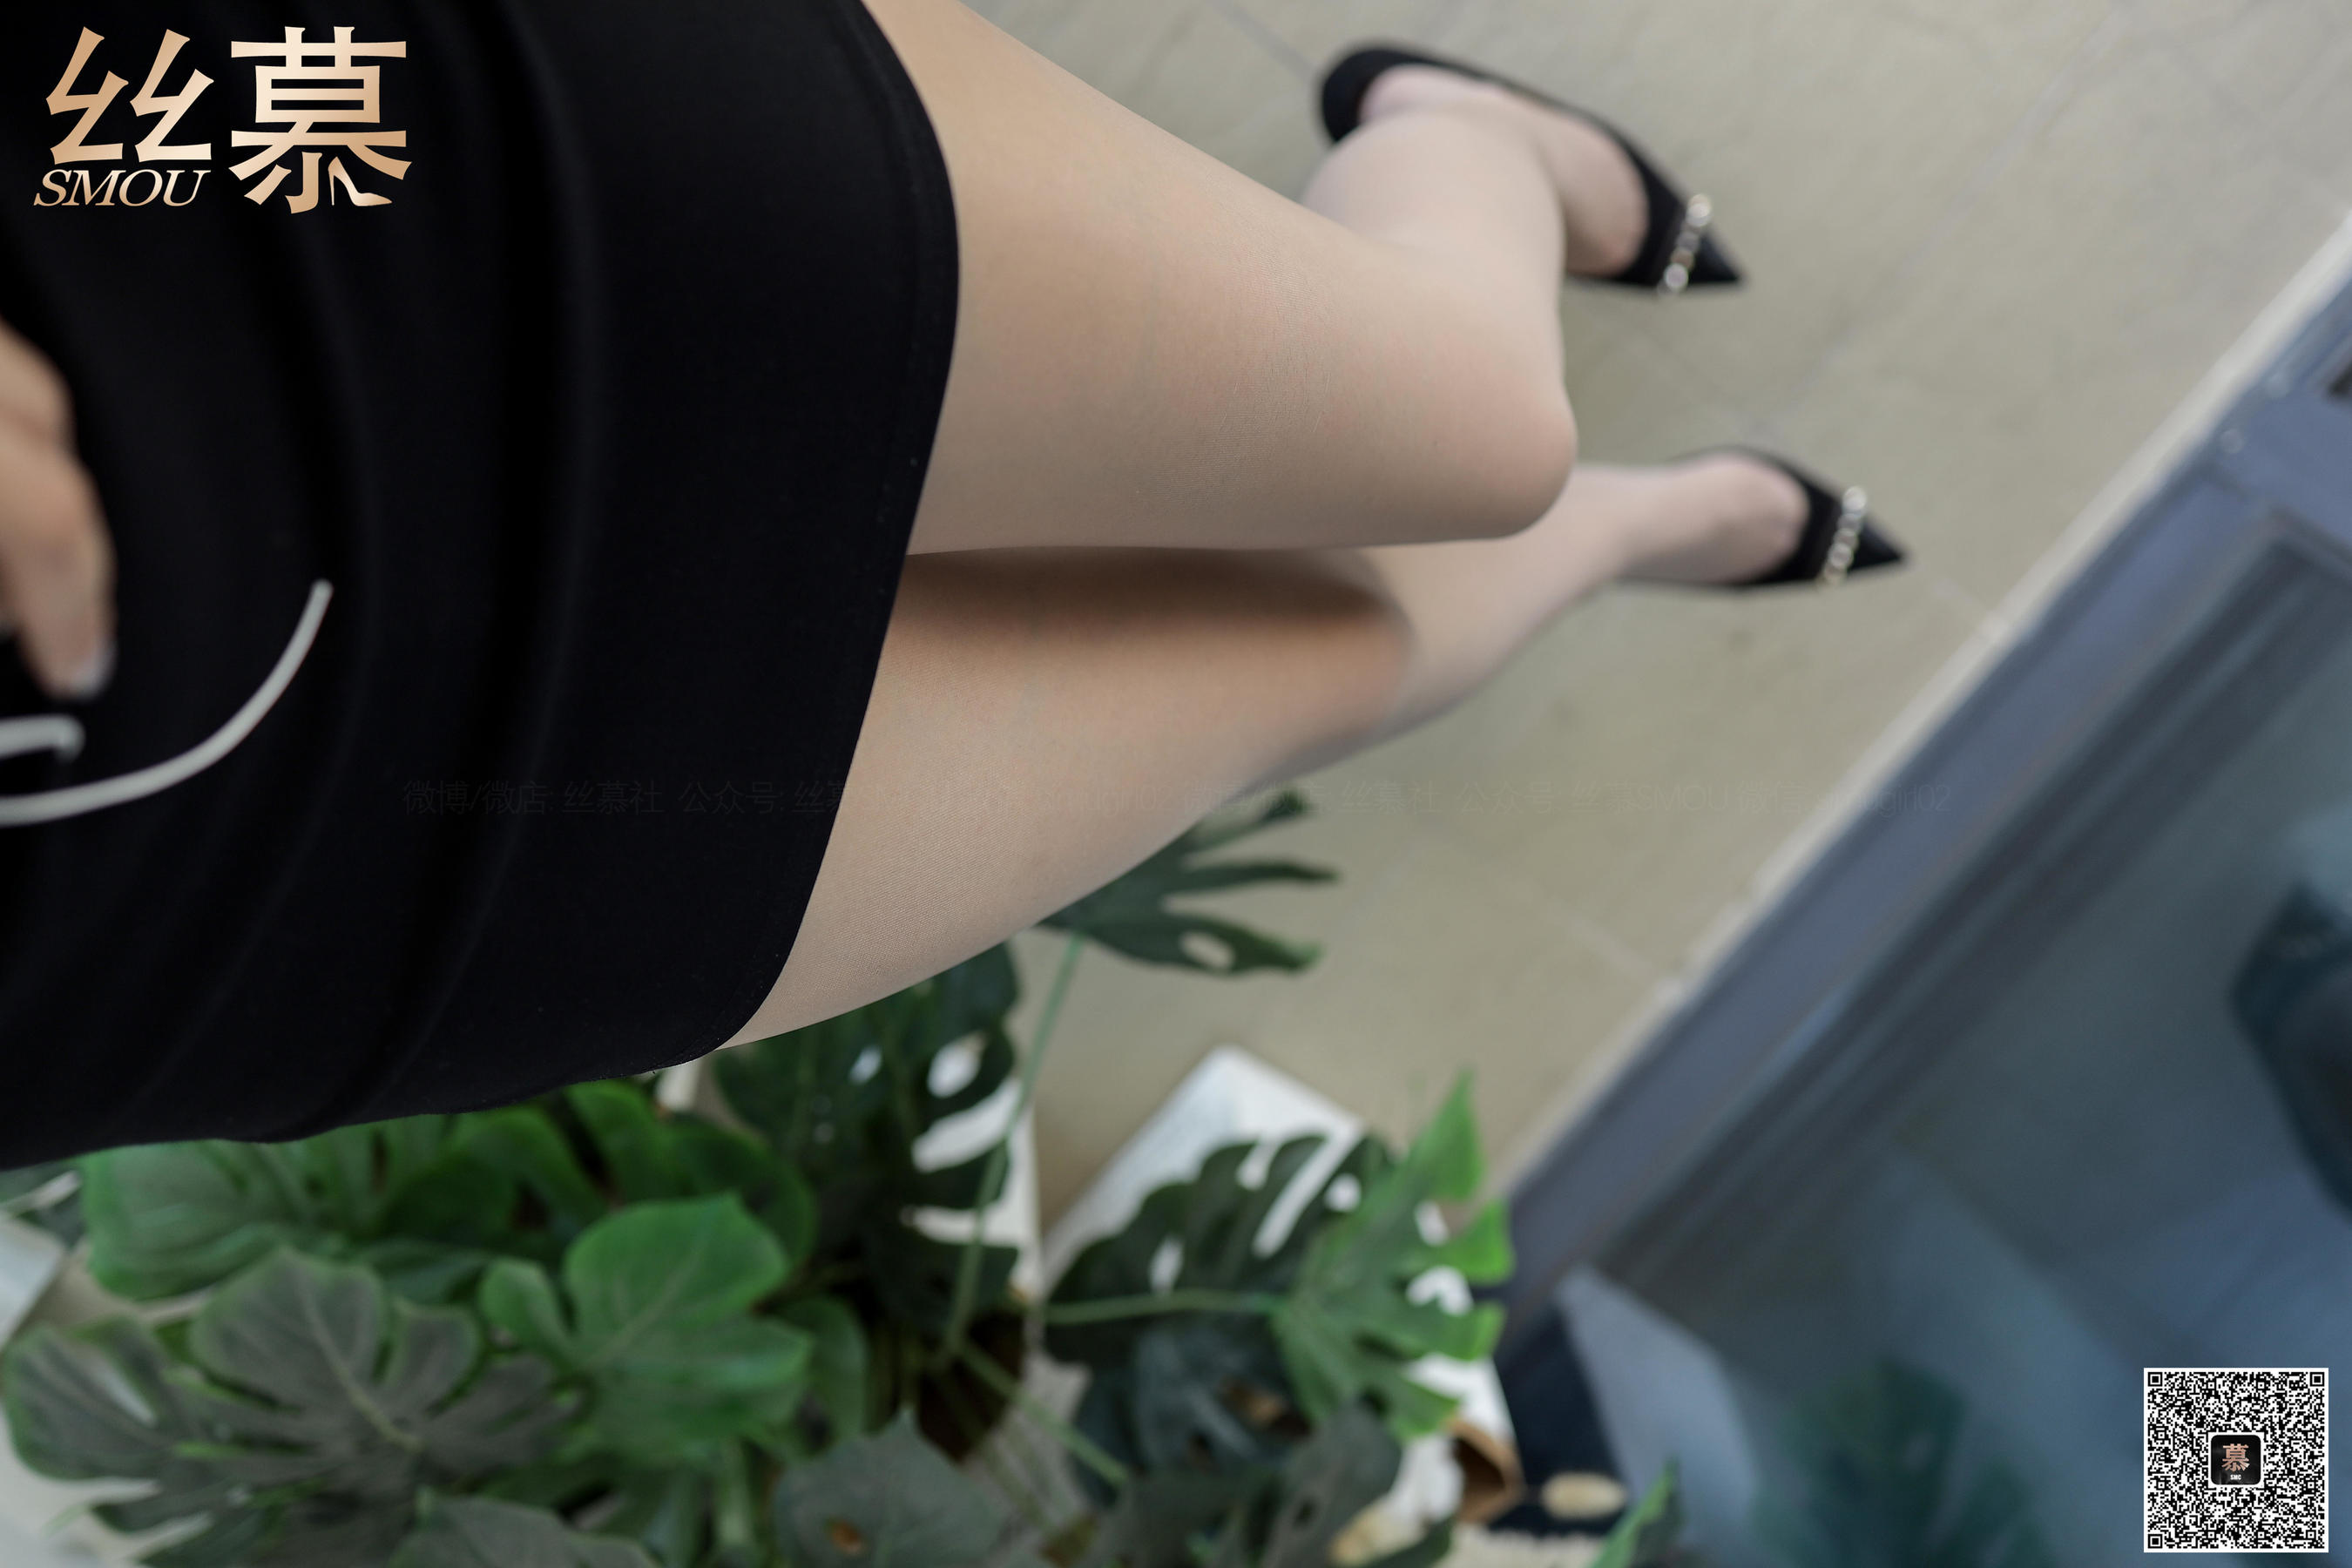 [丝慕]丝袜短裙吊带:米朵高品质写真大图收藏合集(58P)